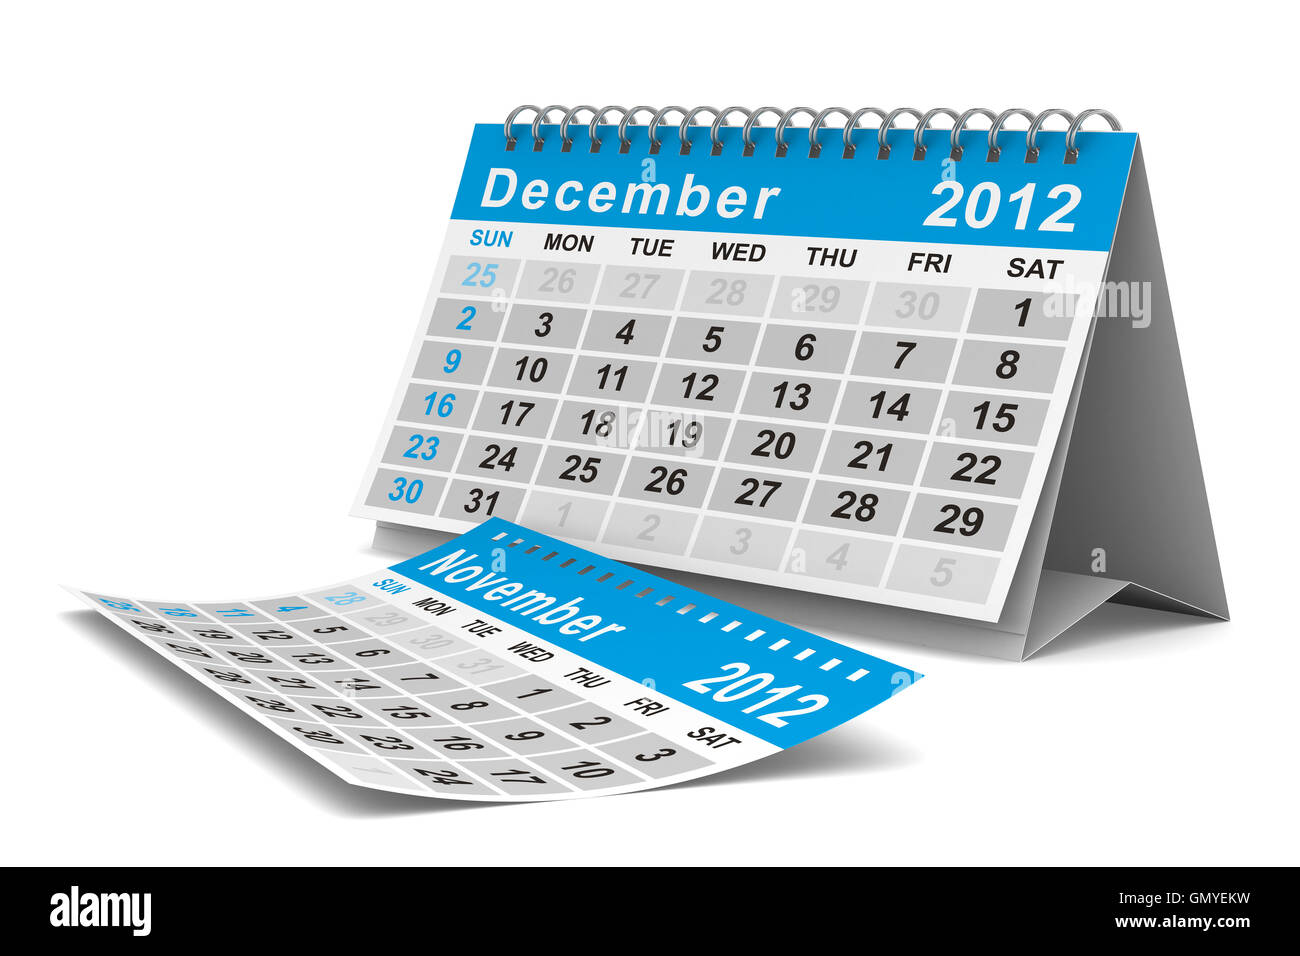 Calendrier de l'année 2012. Décembre. Image 3D isolés Banque D'Images